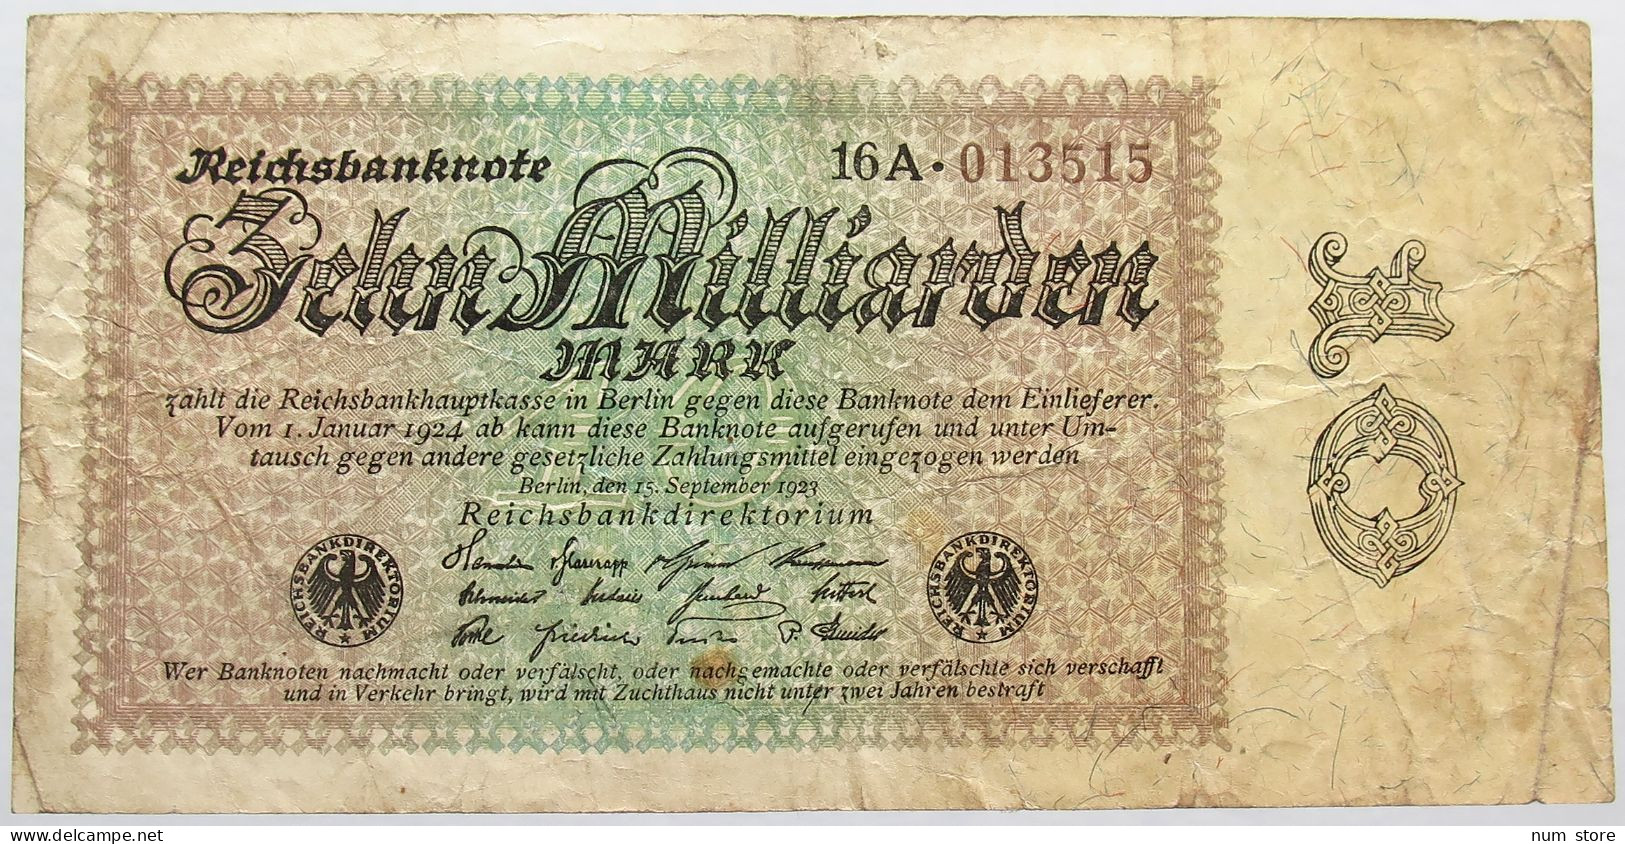 GERMANY 10 MILLIARDEN 1923 #alb013 0205 - 10 Milliarden Mark